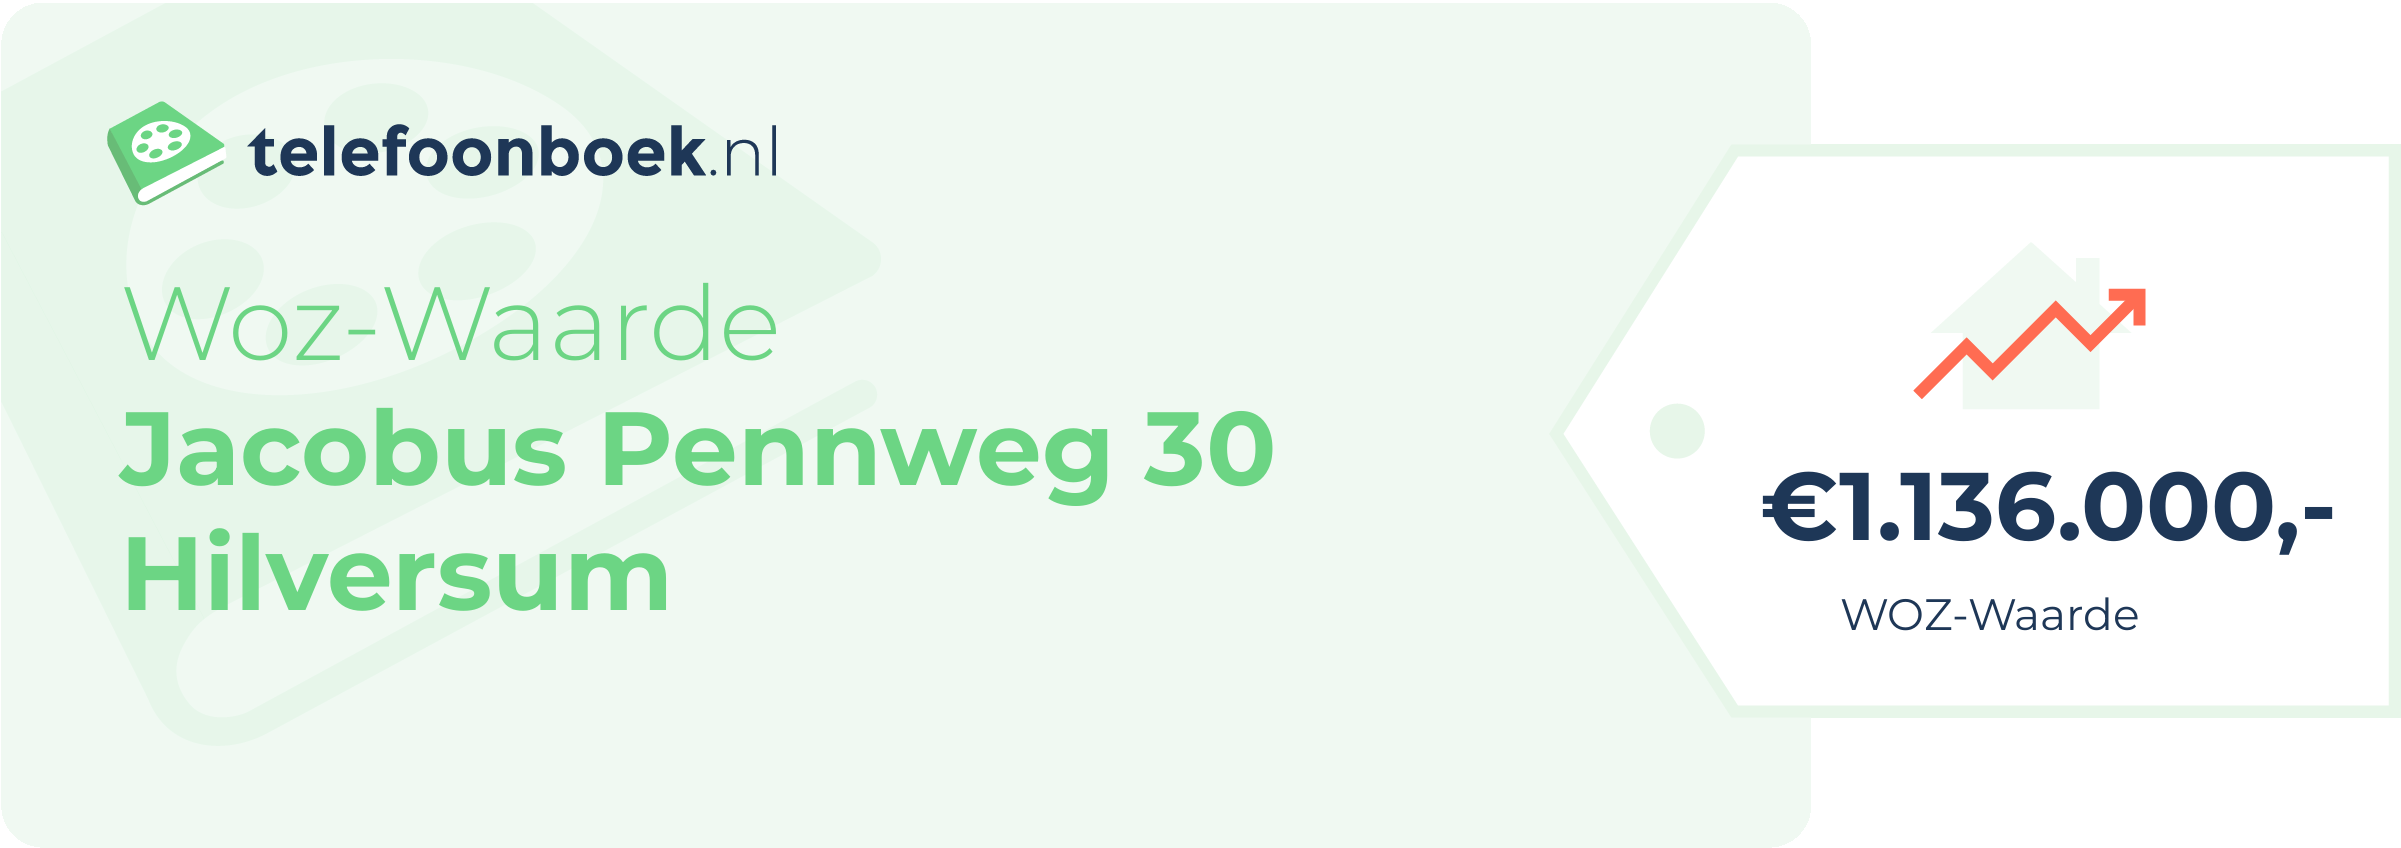 WOZ-waarde Jacobus Pennweg 30 Hilversum